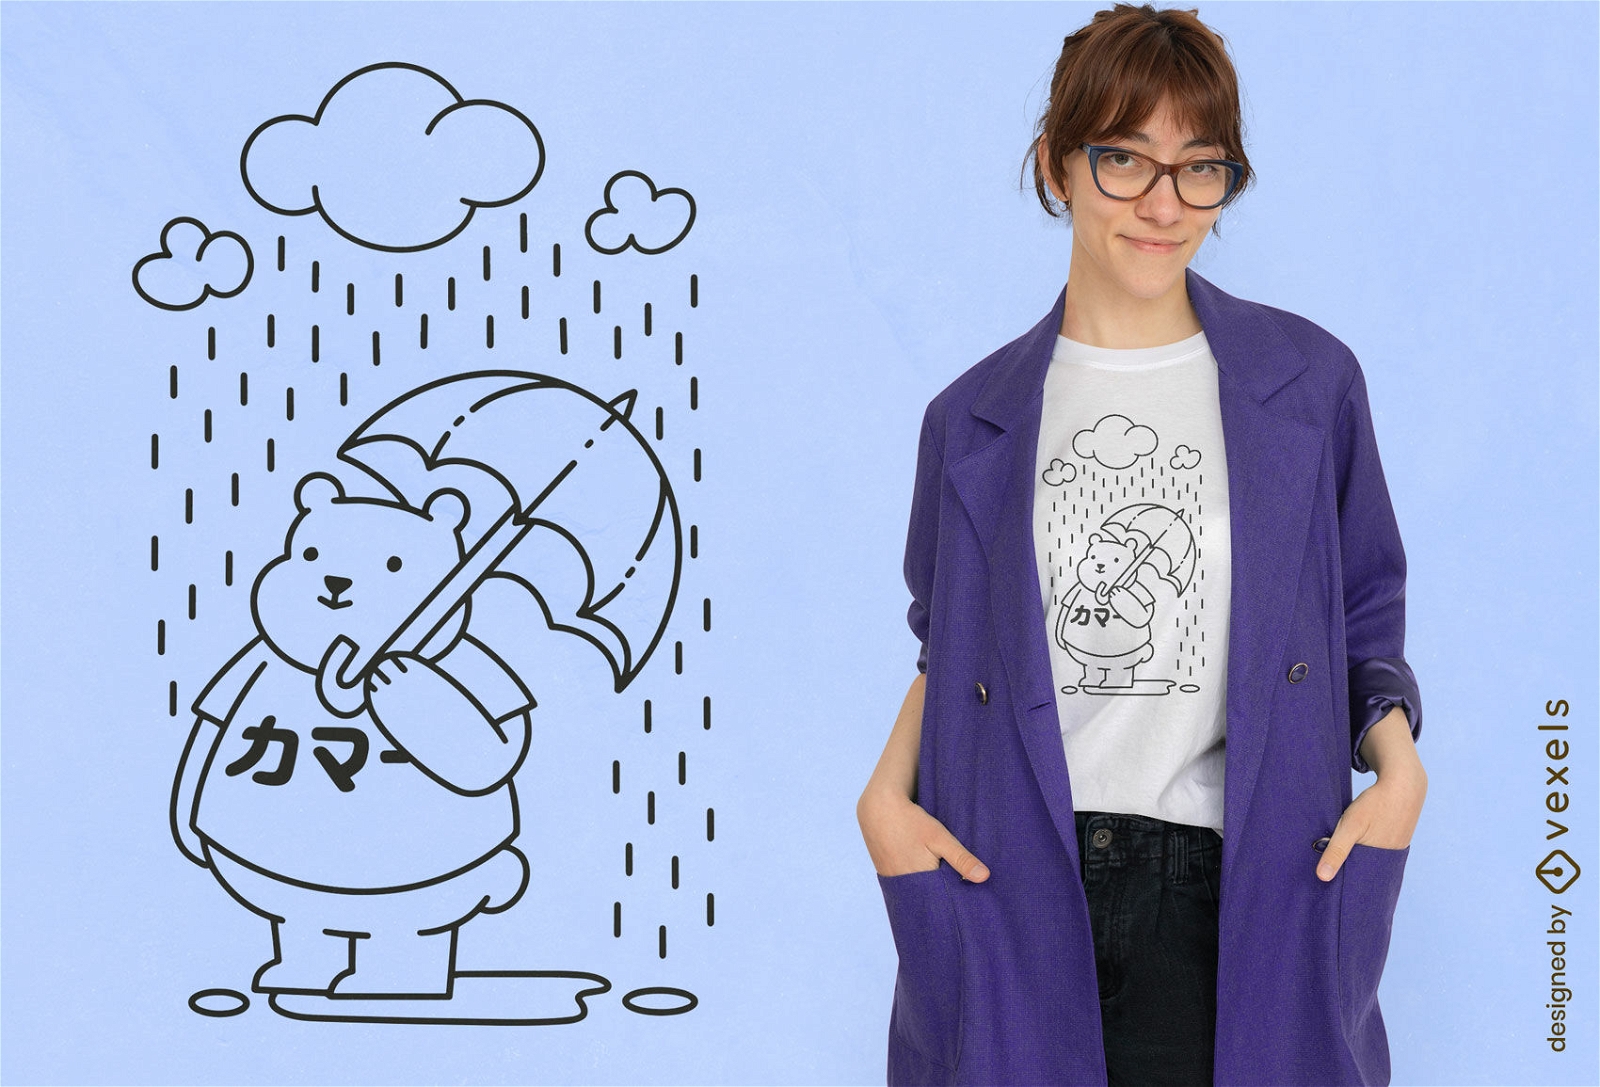 Süßer Bär unter Regenschirm und Regen-T-Shirt-Design